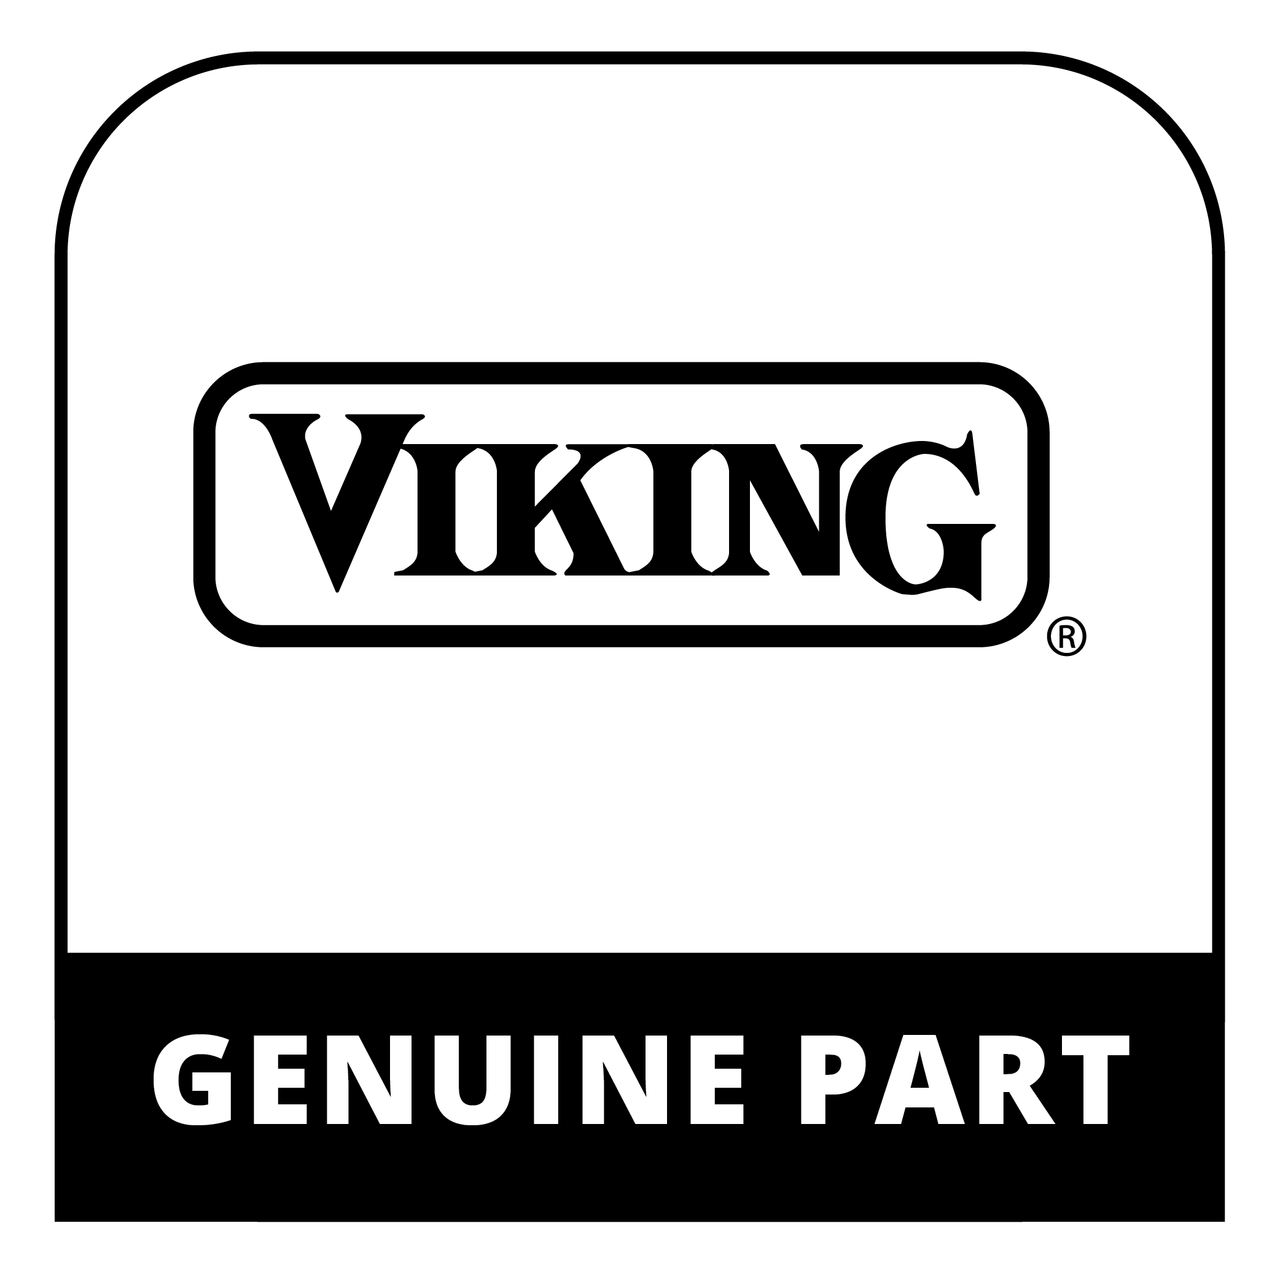 Viking LX34612 - Front Panel, L700 Non-Ir - Genuine Viking Part